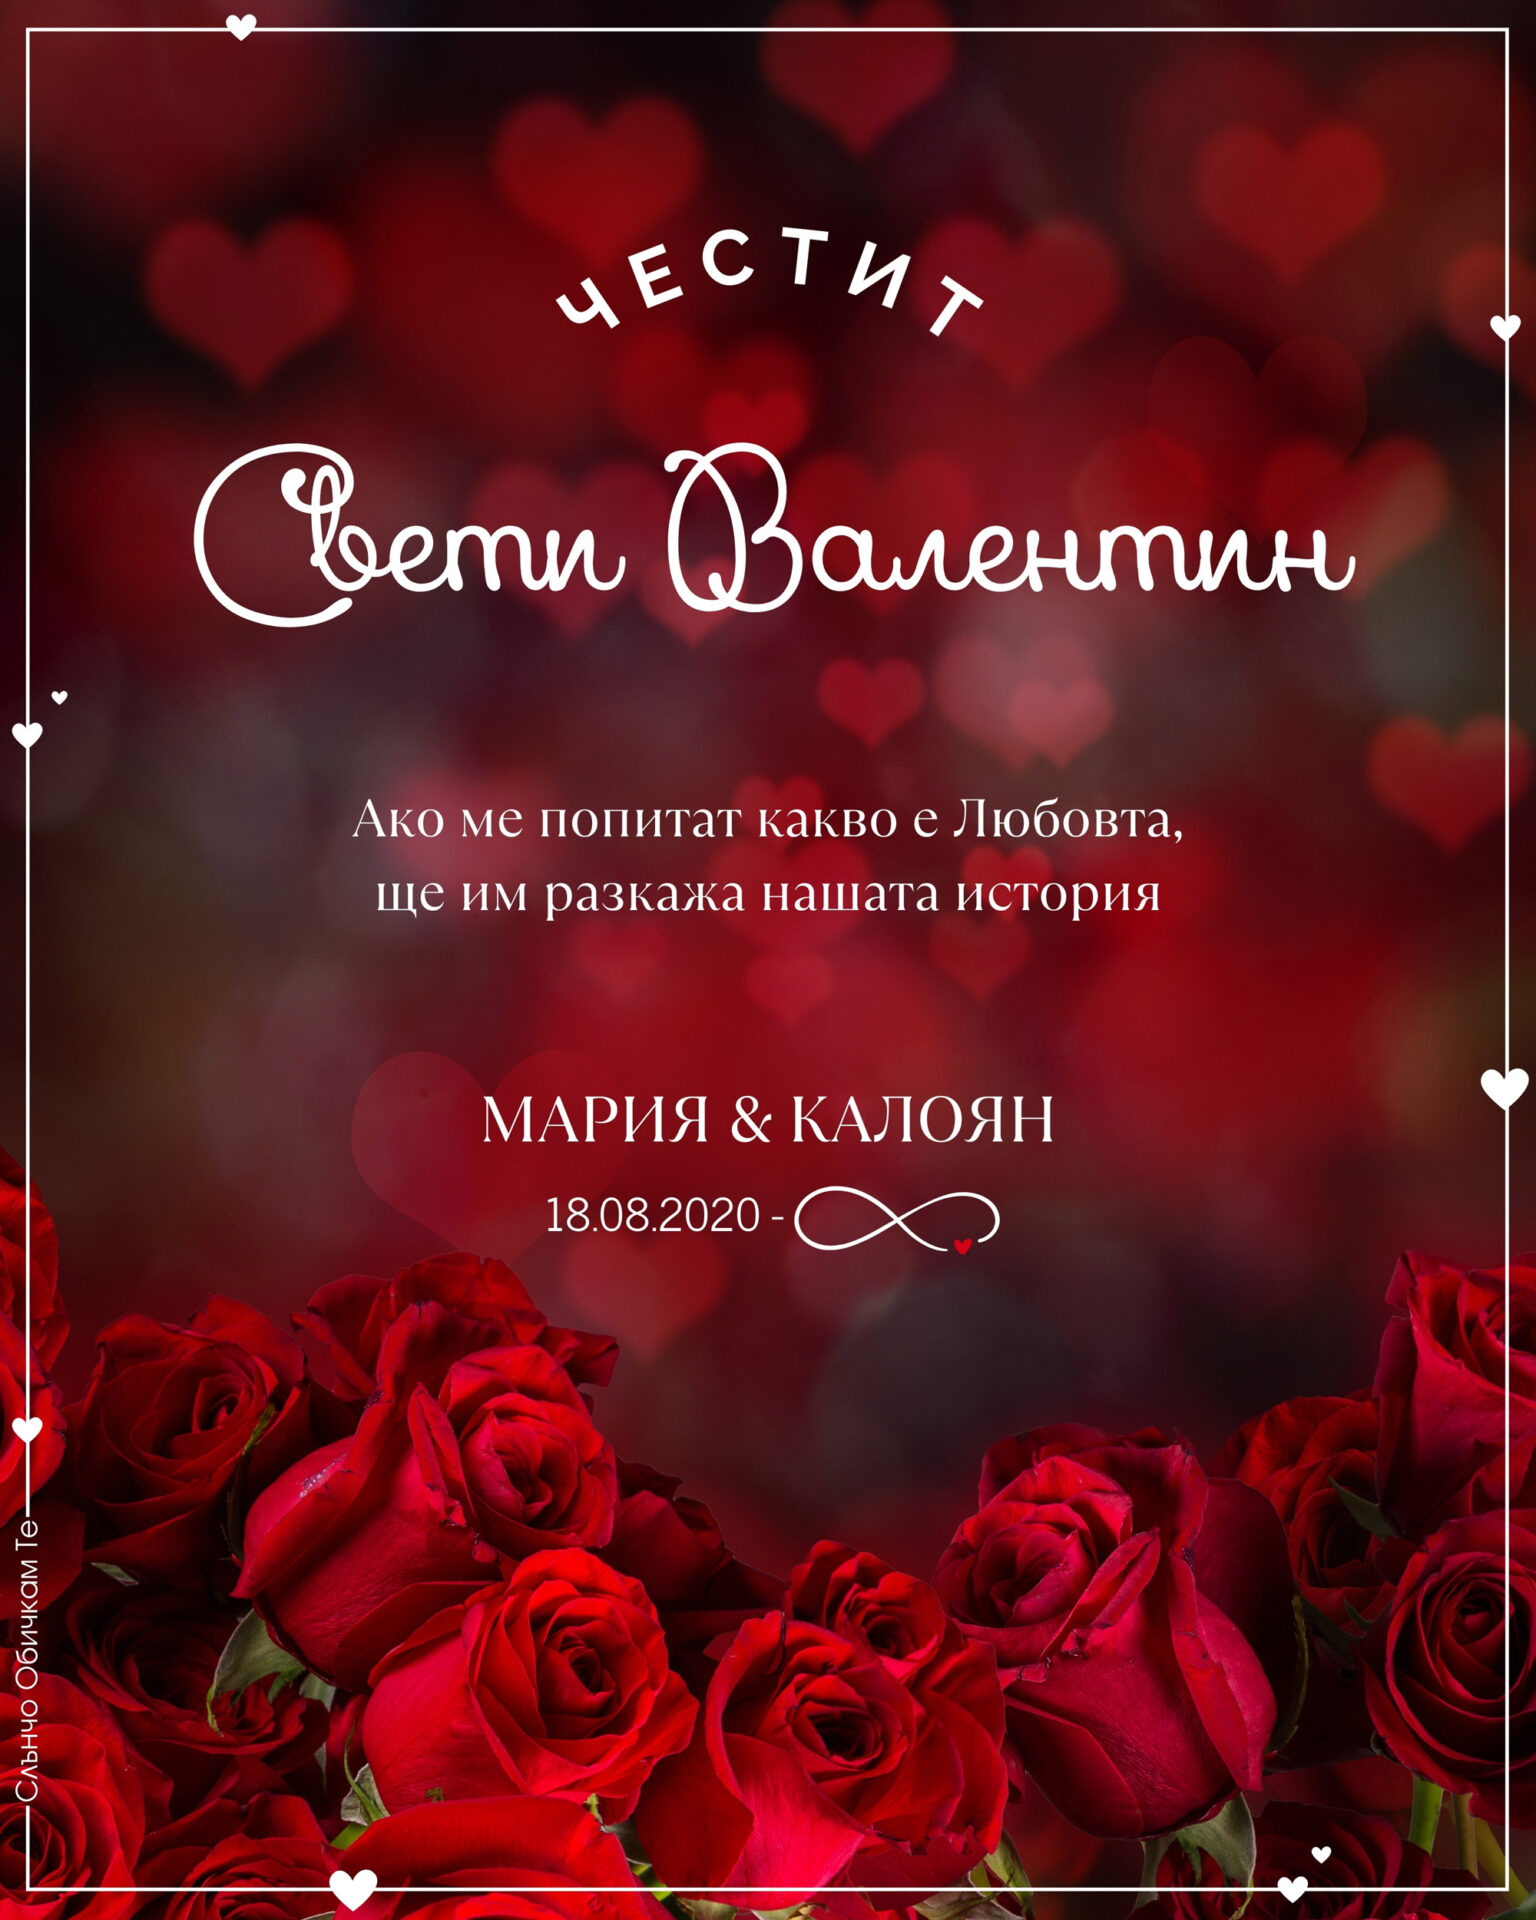 Картичка за Свети Валентин с рози – Честит Свети Валентин, картички за Свети Валентин